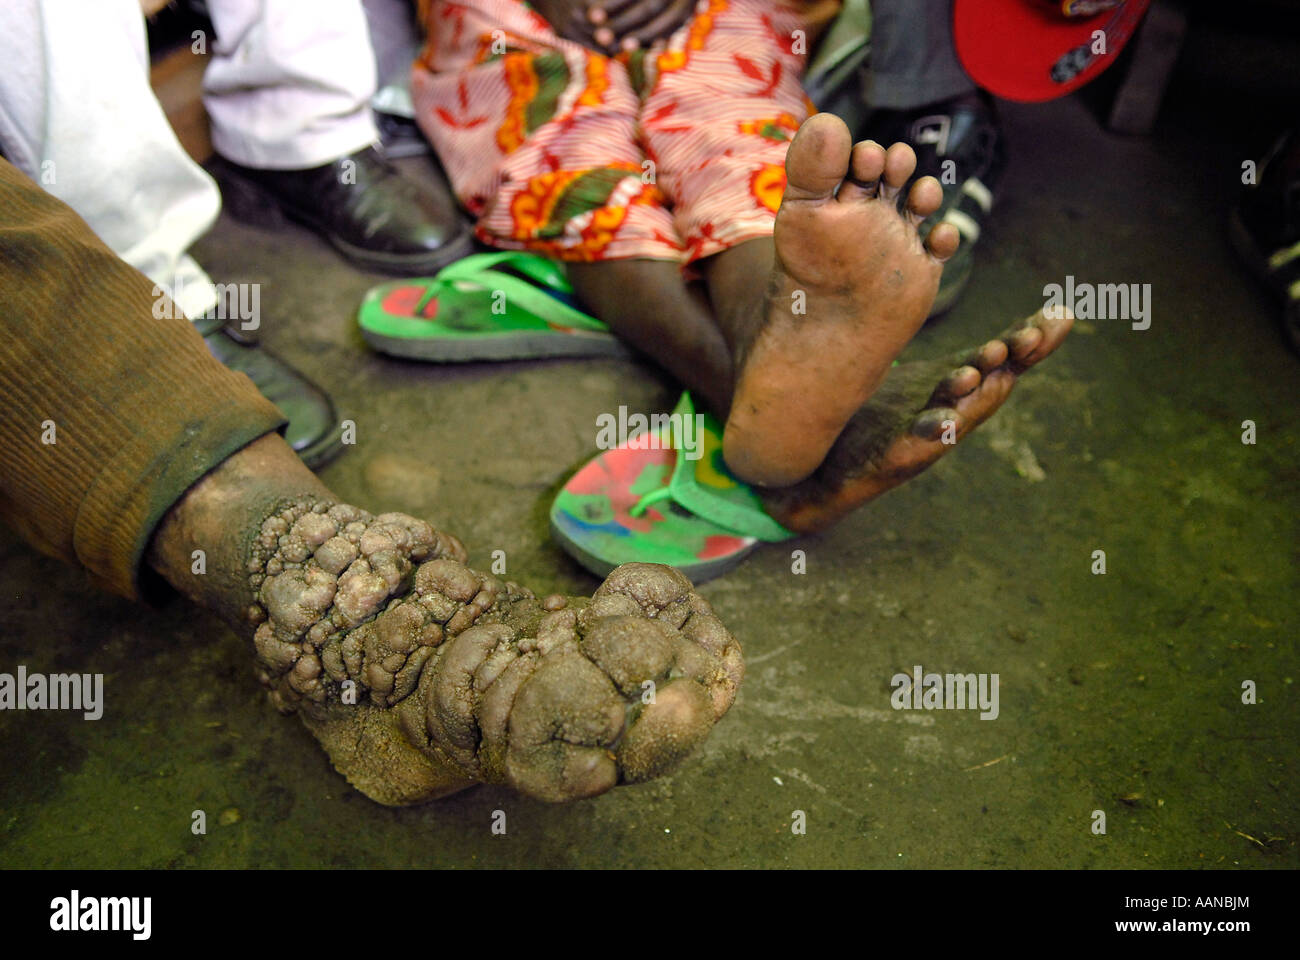 Ein Mann mit einer chronisch entzündlichen Podokoniose in seinen Füßen. Provinz Nord-Kivu DR Kongo Afrika Stockfoto